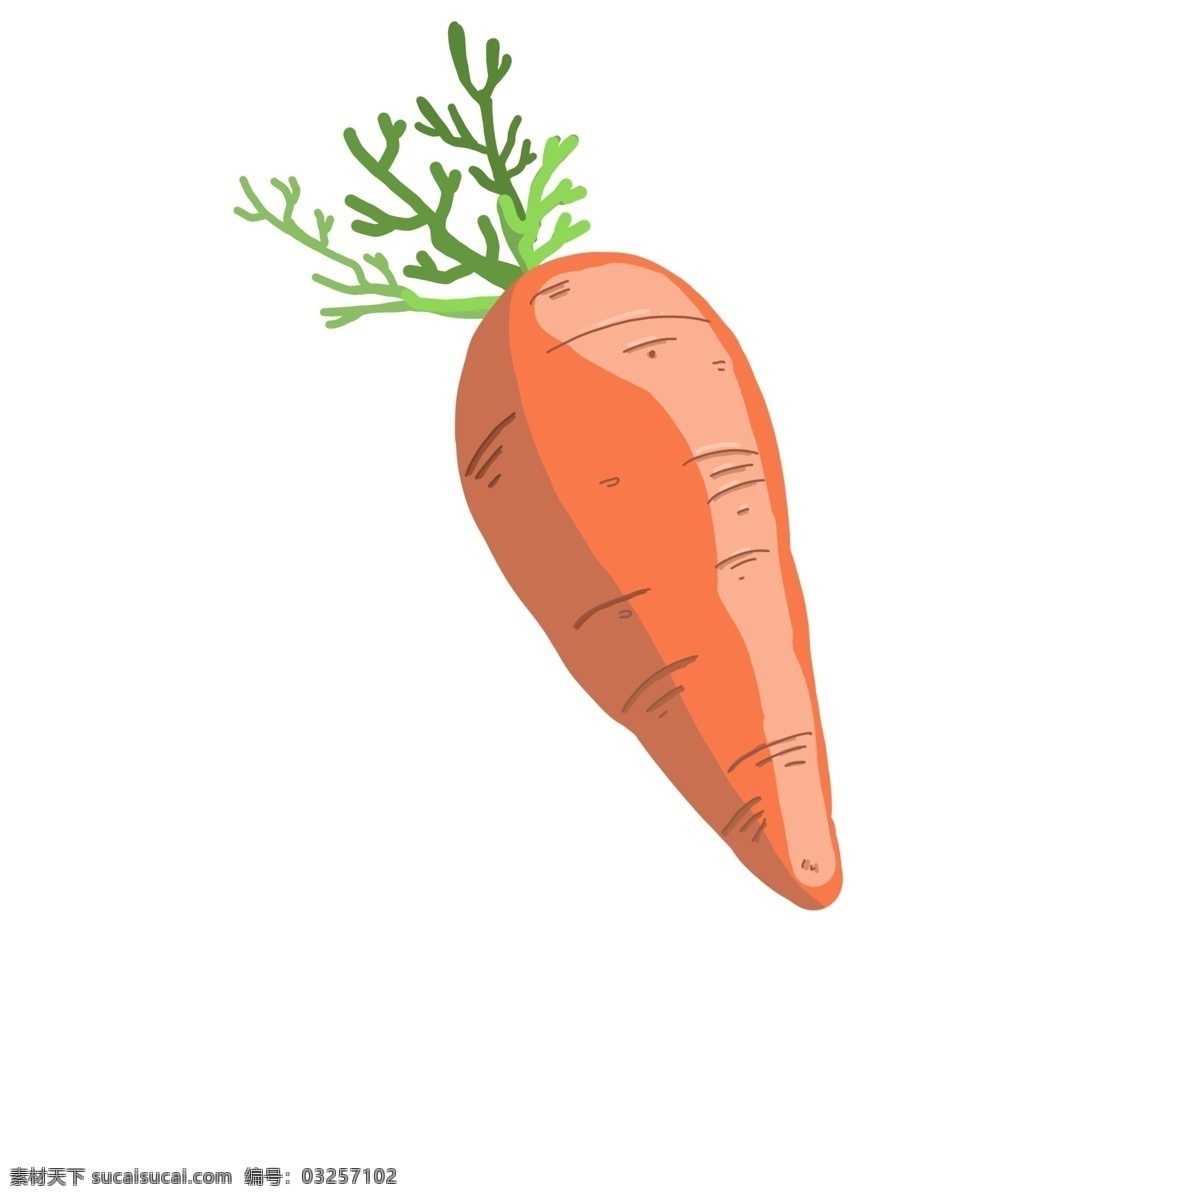 食 材 蔬菜 胡萝卜 食材 免抠 卡通 手绘